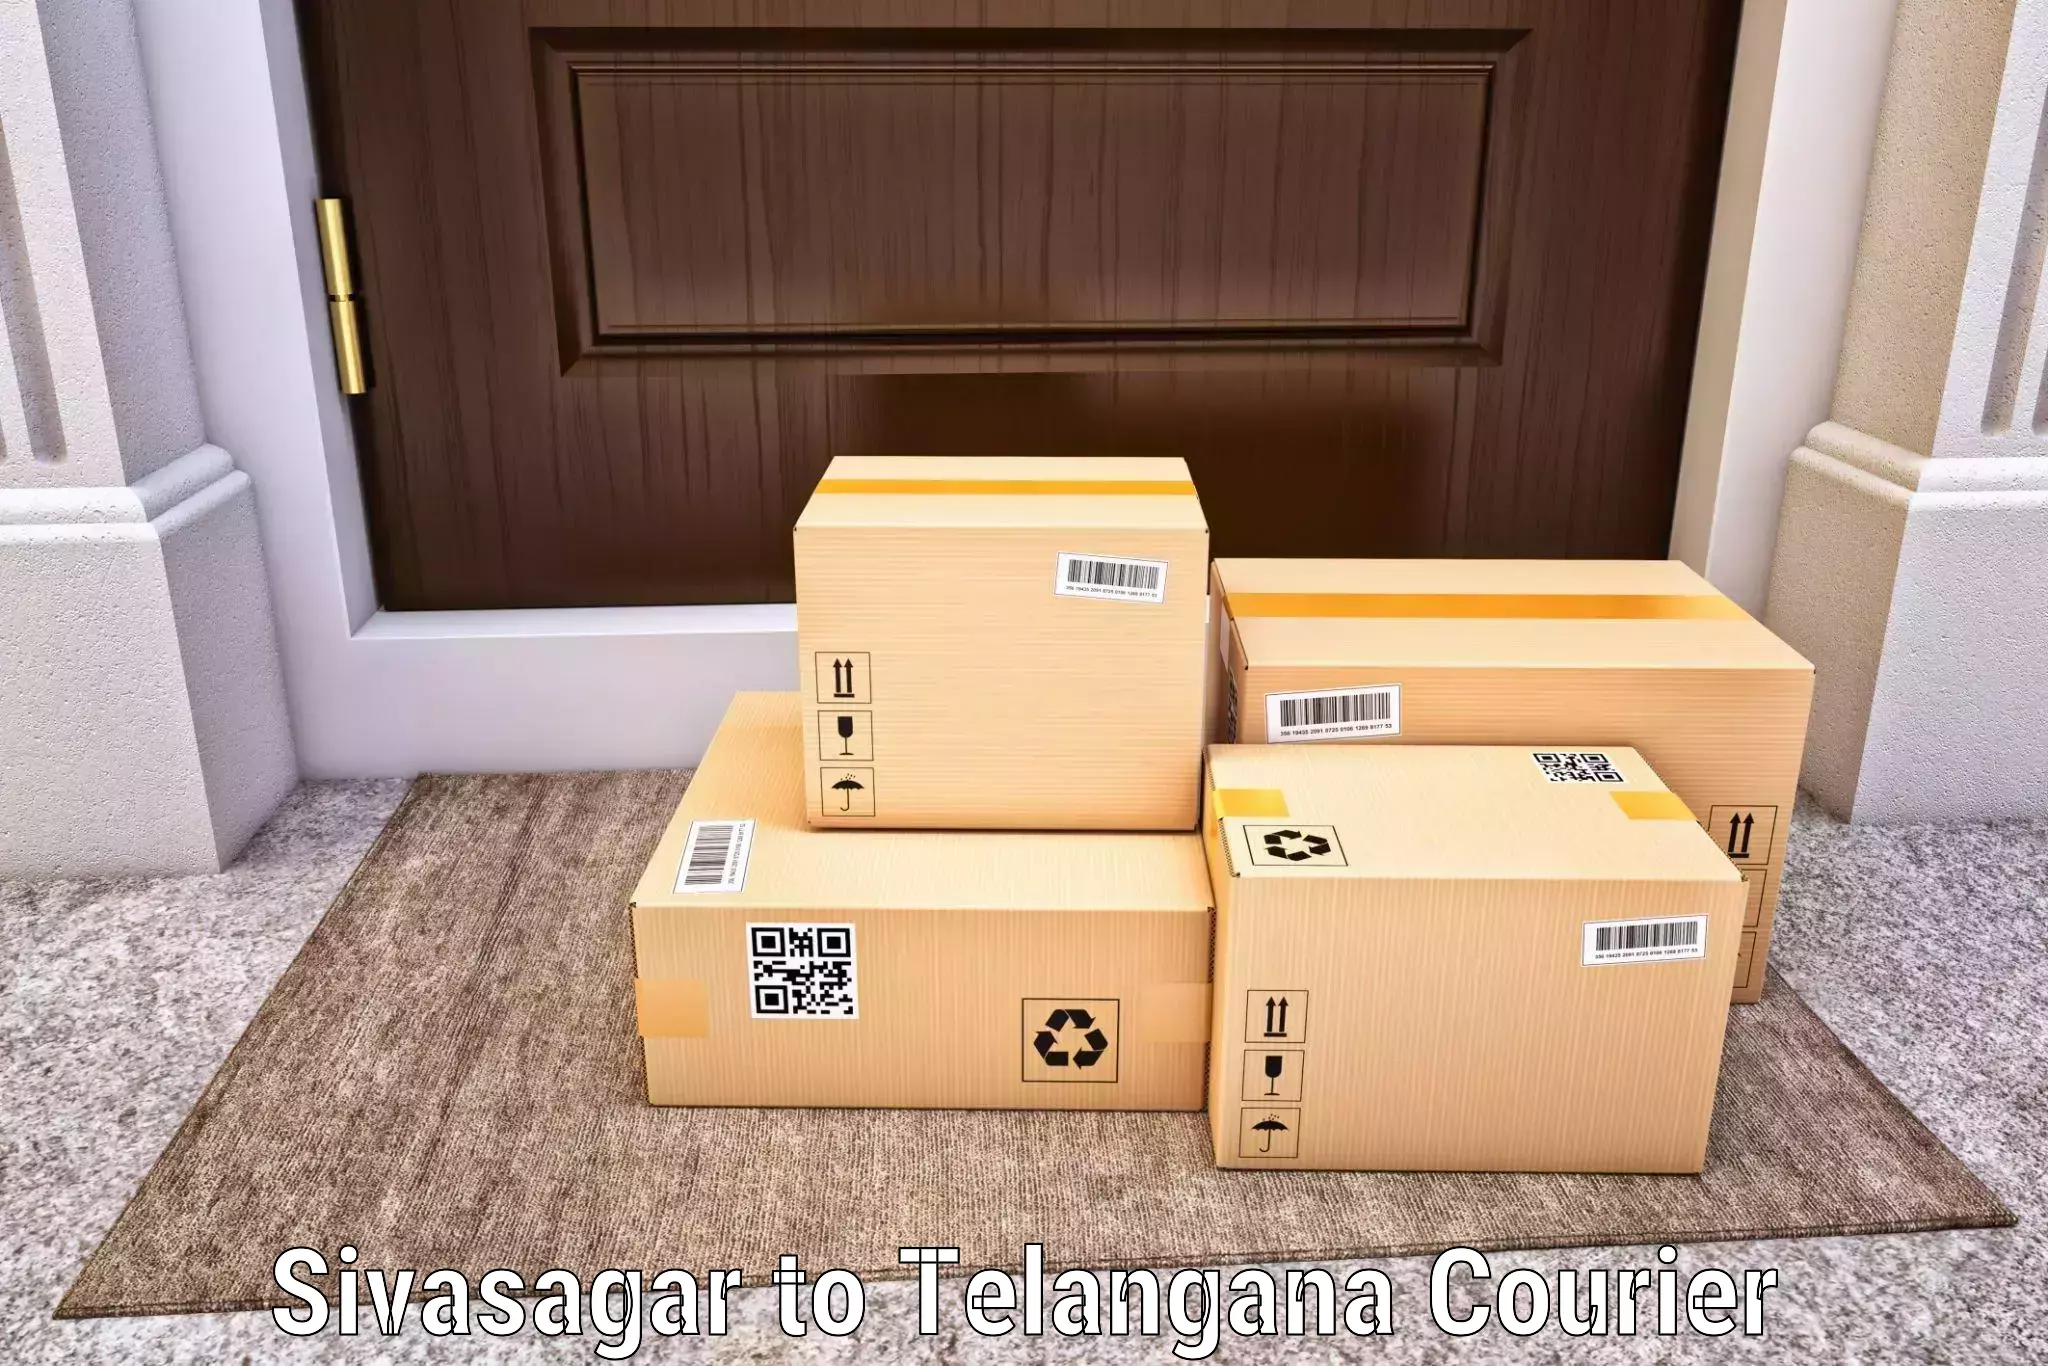 Reliable courier services Sivasagar to Bellampalli